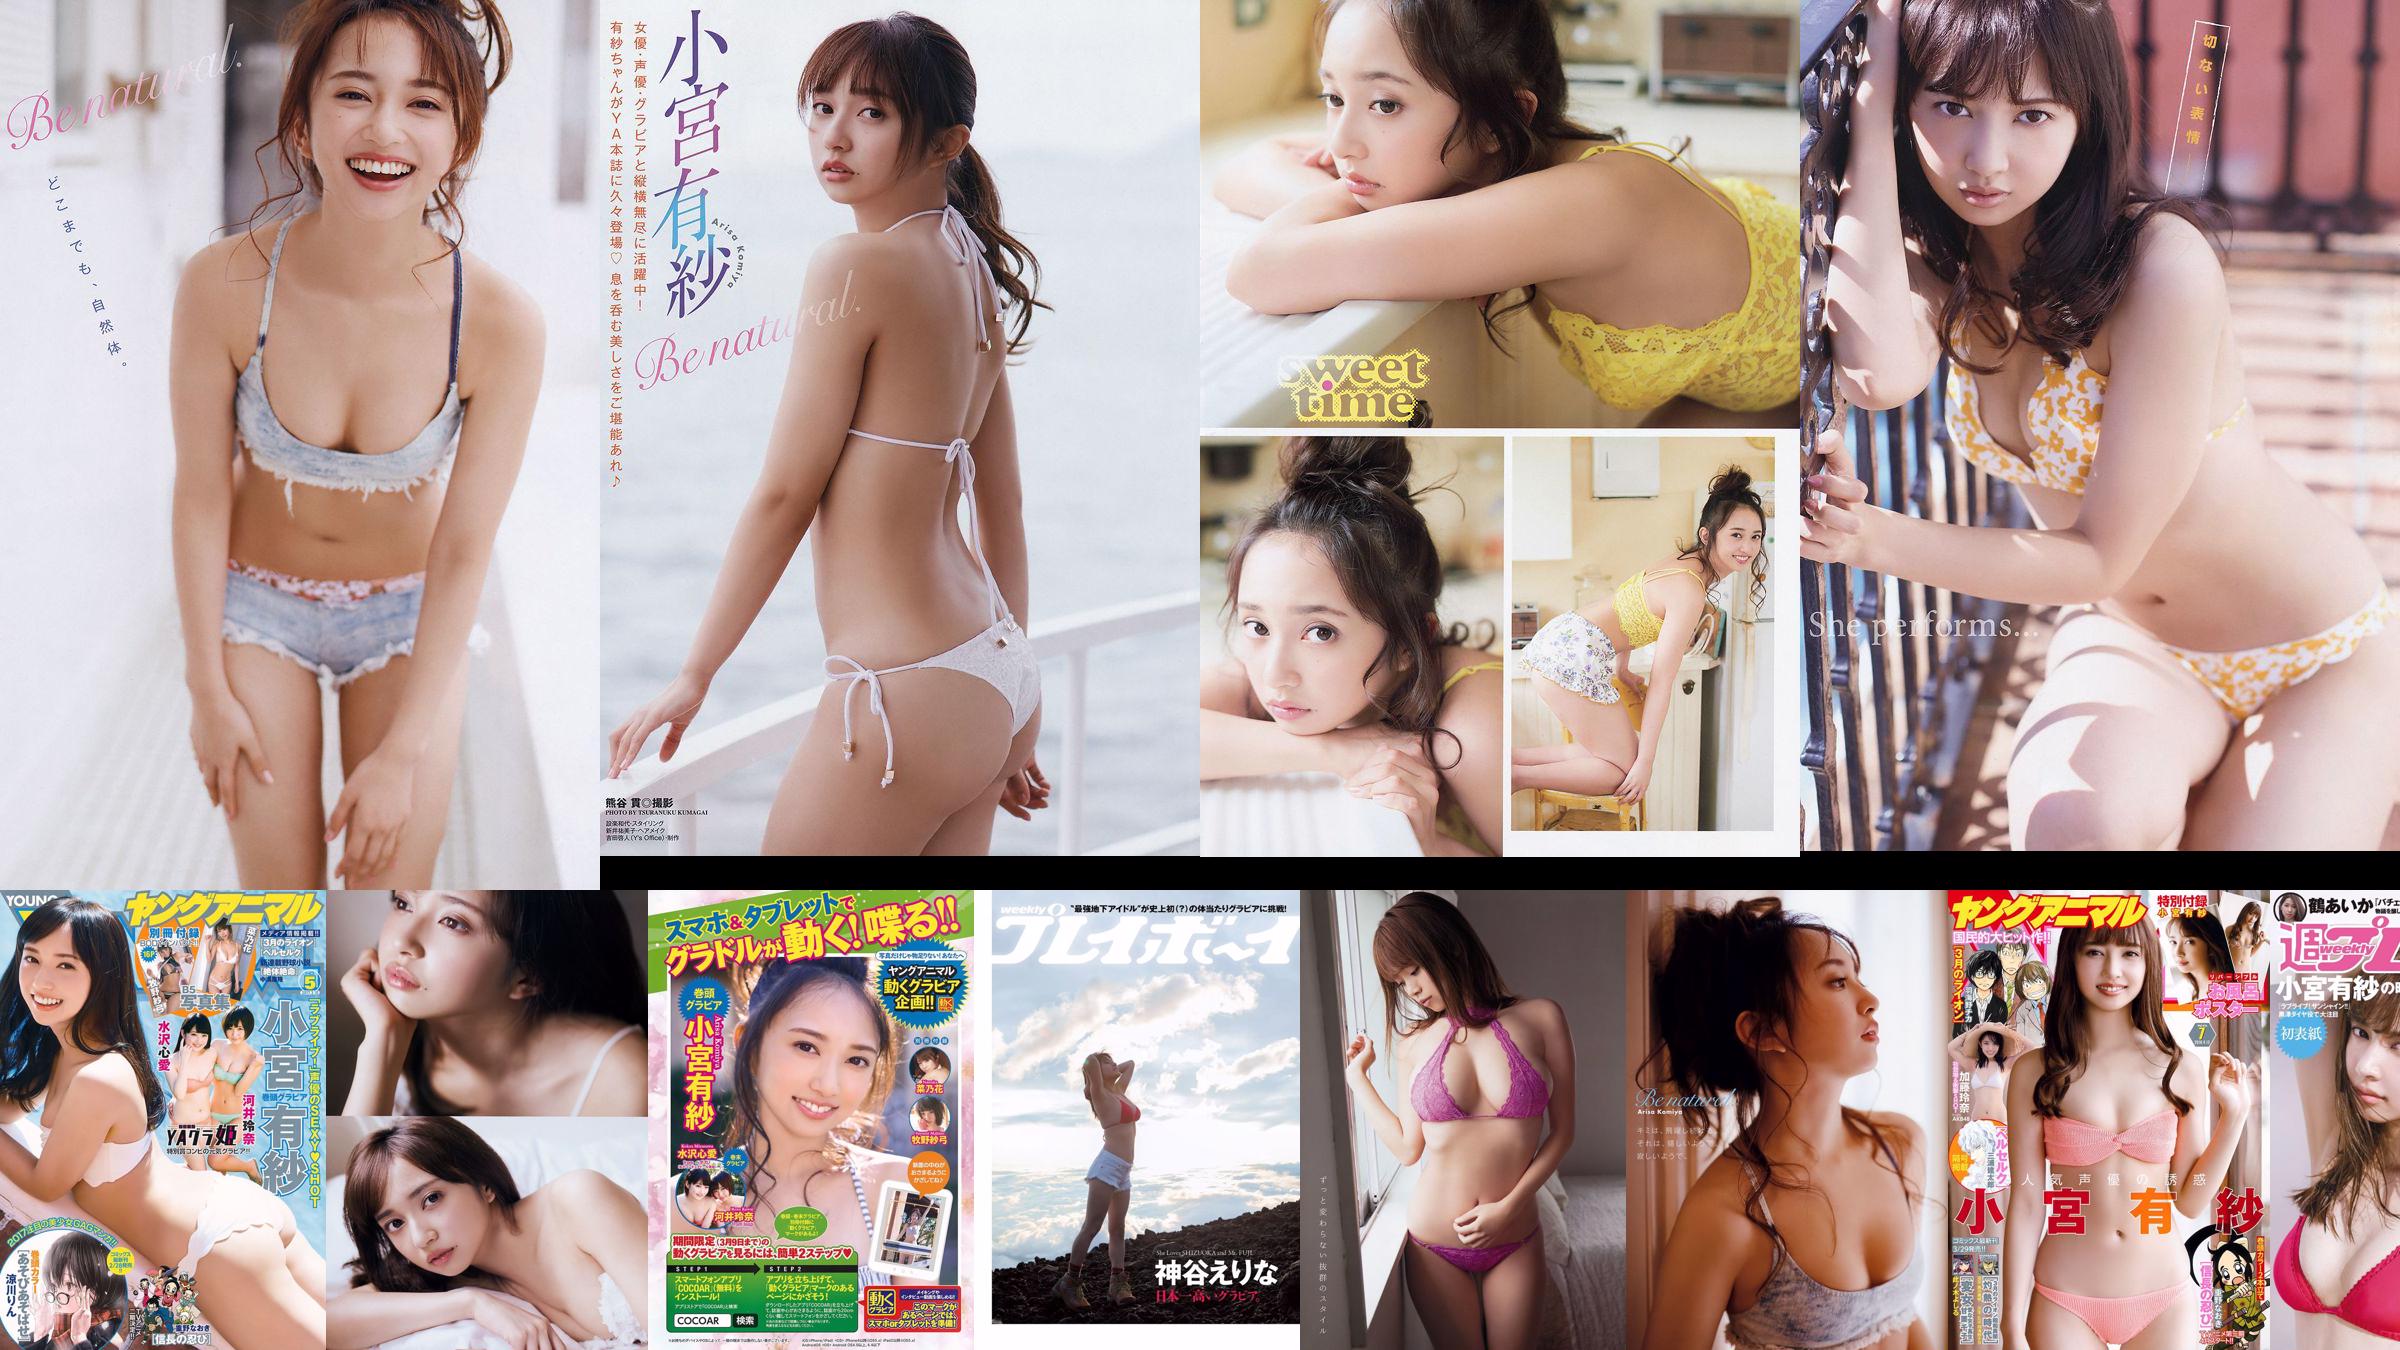 Arisa Komiya Aika Tsuru Sayaka Isoyama Kasumi Arimura Rina Otomo Sei Shiraishi Erina Kamiya [Weekly Playboy] 2017 No.41 Ảnh No.0ba8cb Trang 10